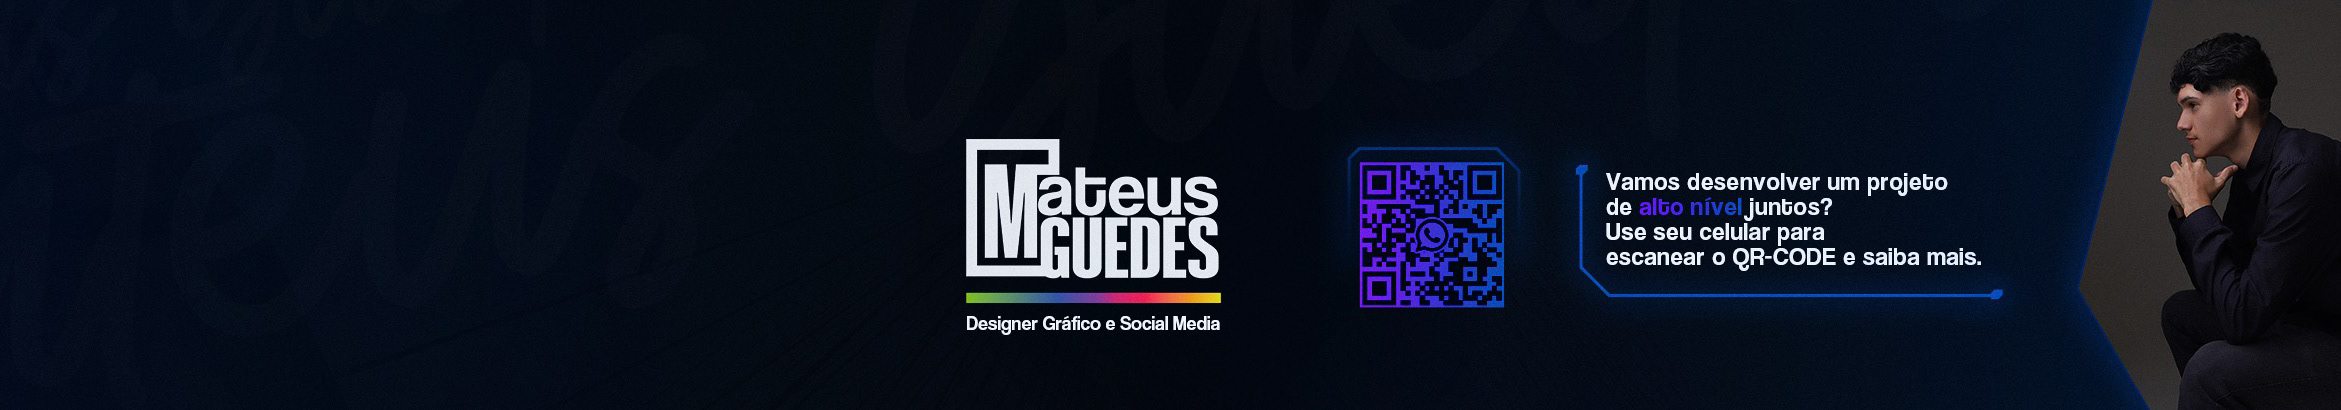 Banner de perfil de Mateus Guedes